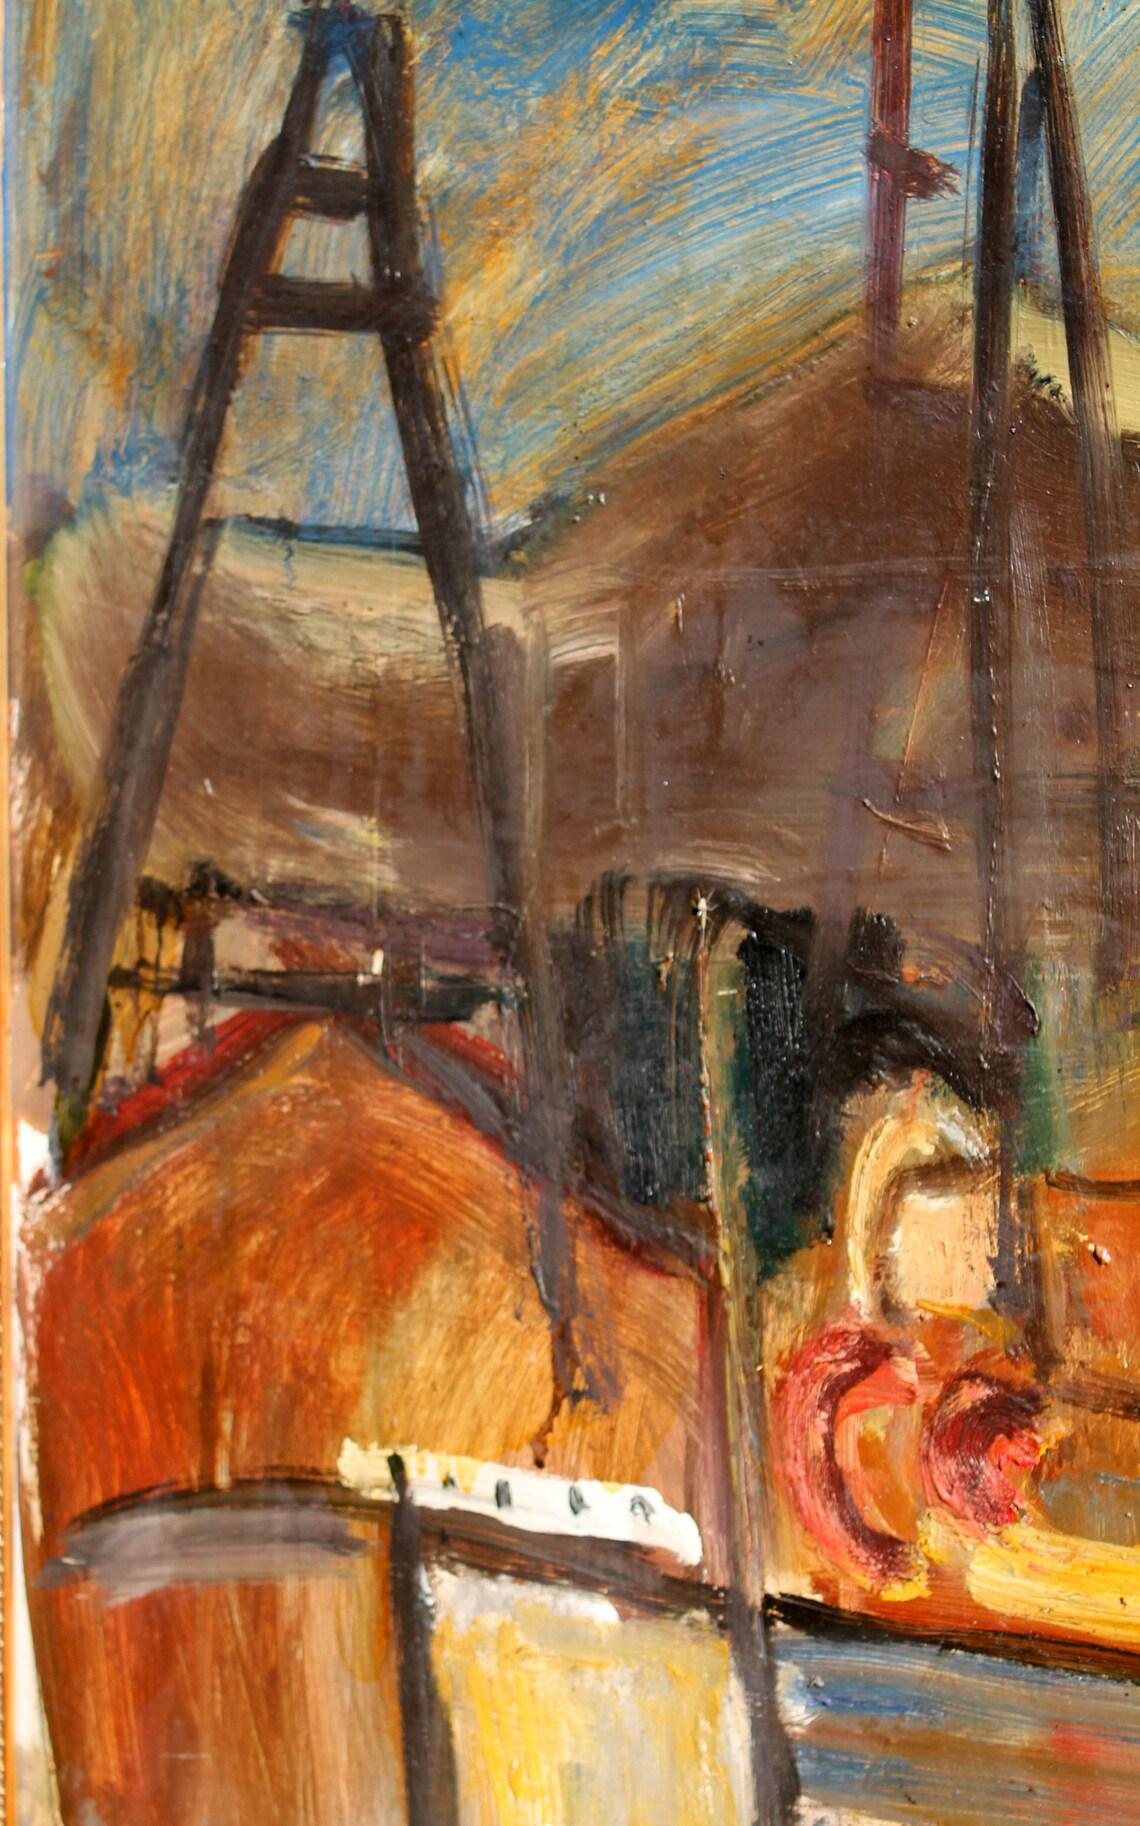 Description
Artistics : Jean Krille - peintre expressionniste
Suisse (1923- 1991)
Huile sur carton 
Dimensions de l'œuvre : 136 x 104 cm (53 1/2in. x 41in.)
Signé : au recto dans le coin inférieur droit 